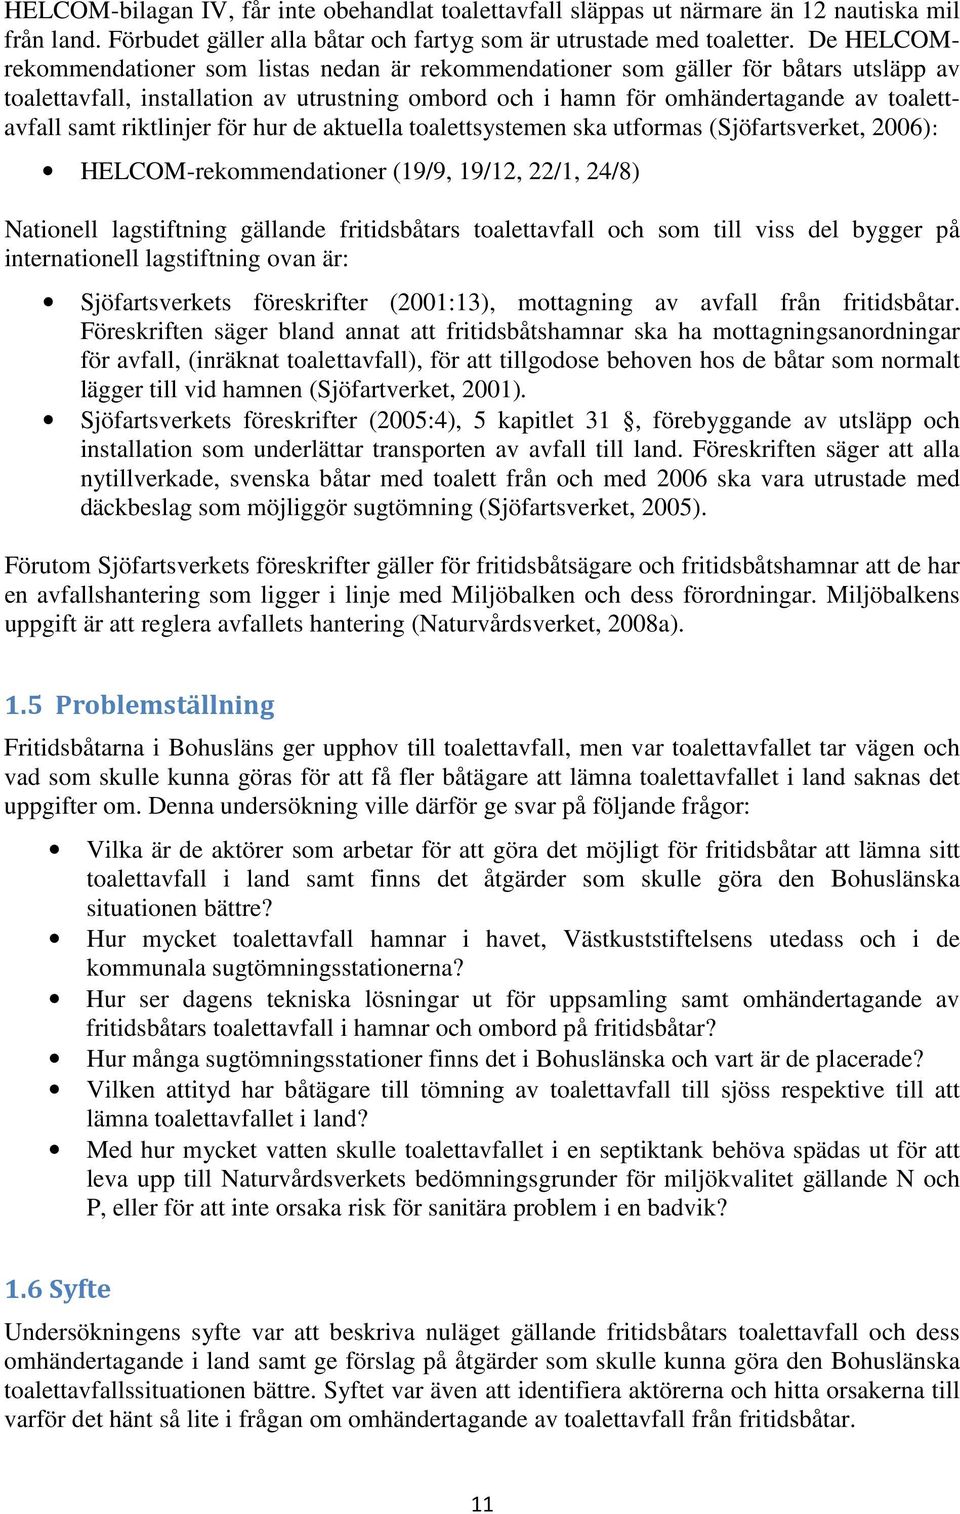 riktlinjer för hur de aktuella toalettsystemen ska utformas (Sjöfartsverket, 2006): HELCOM-rekommendationer (19/9, 19/12, 22/1, 24/8) Nationell lagstiftning gällande fritidsbåtars toalettavfall och